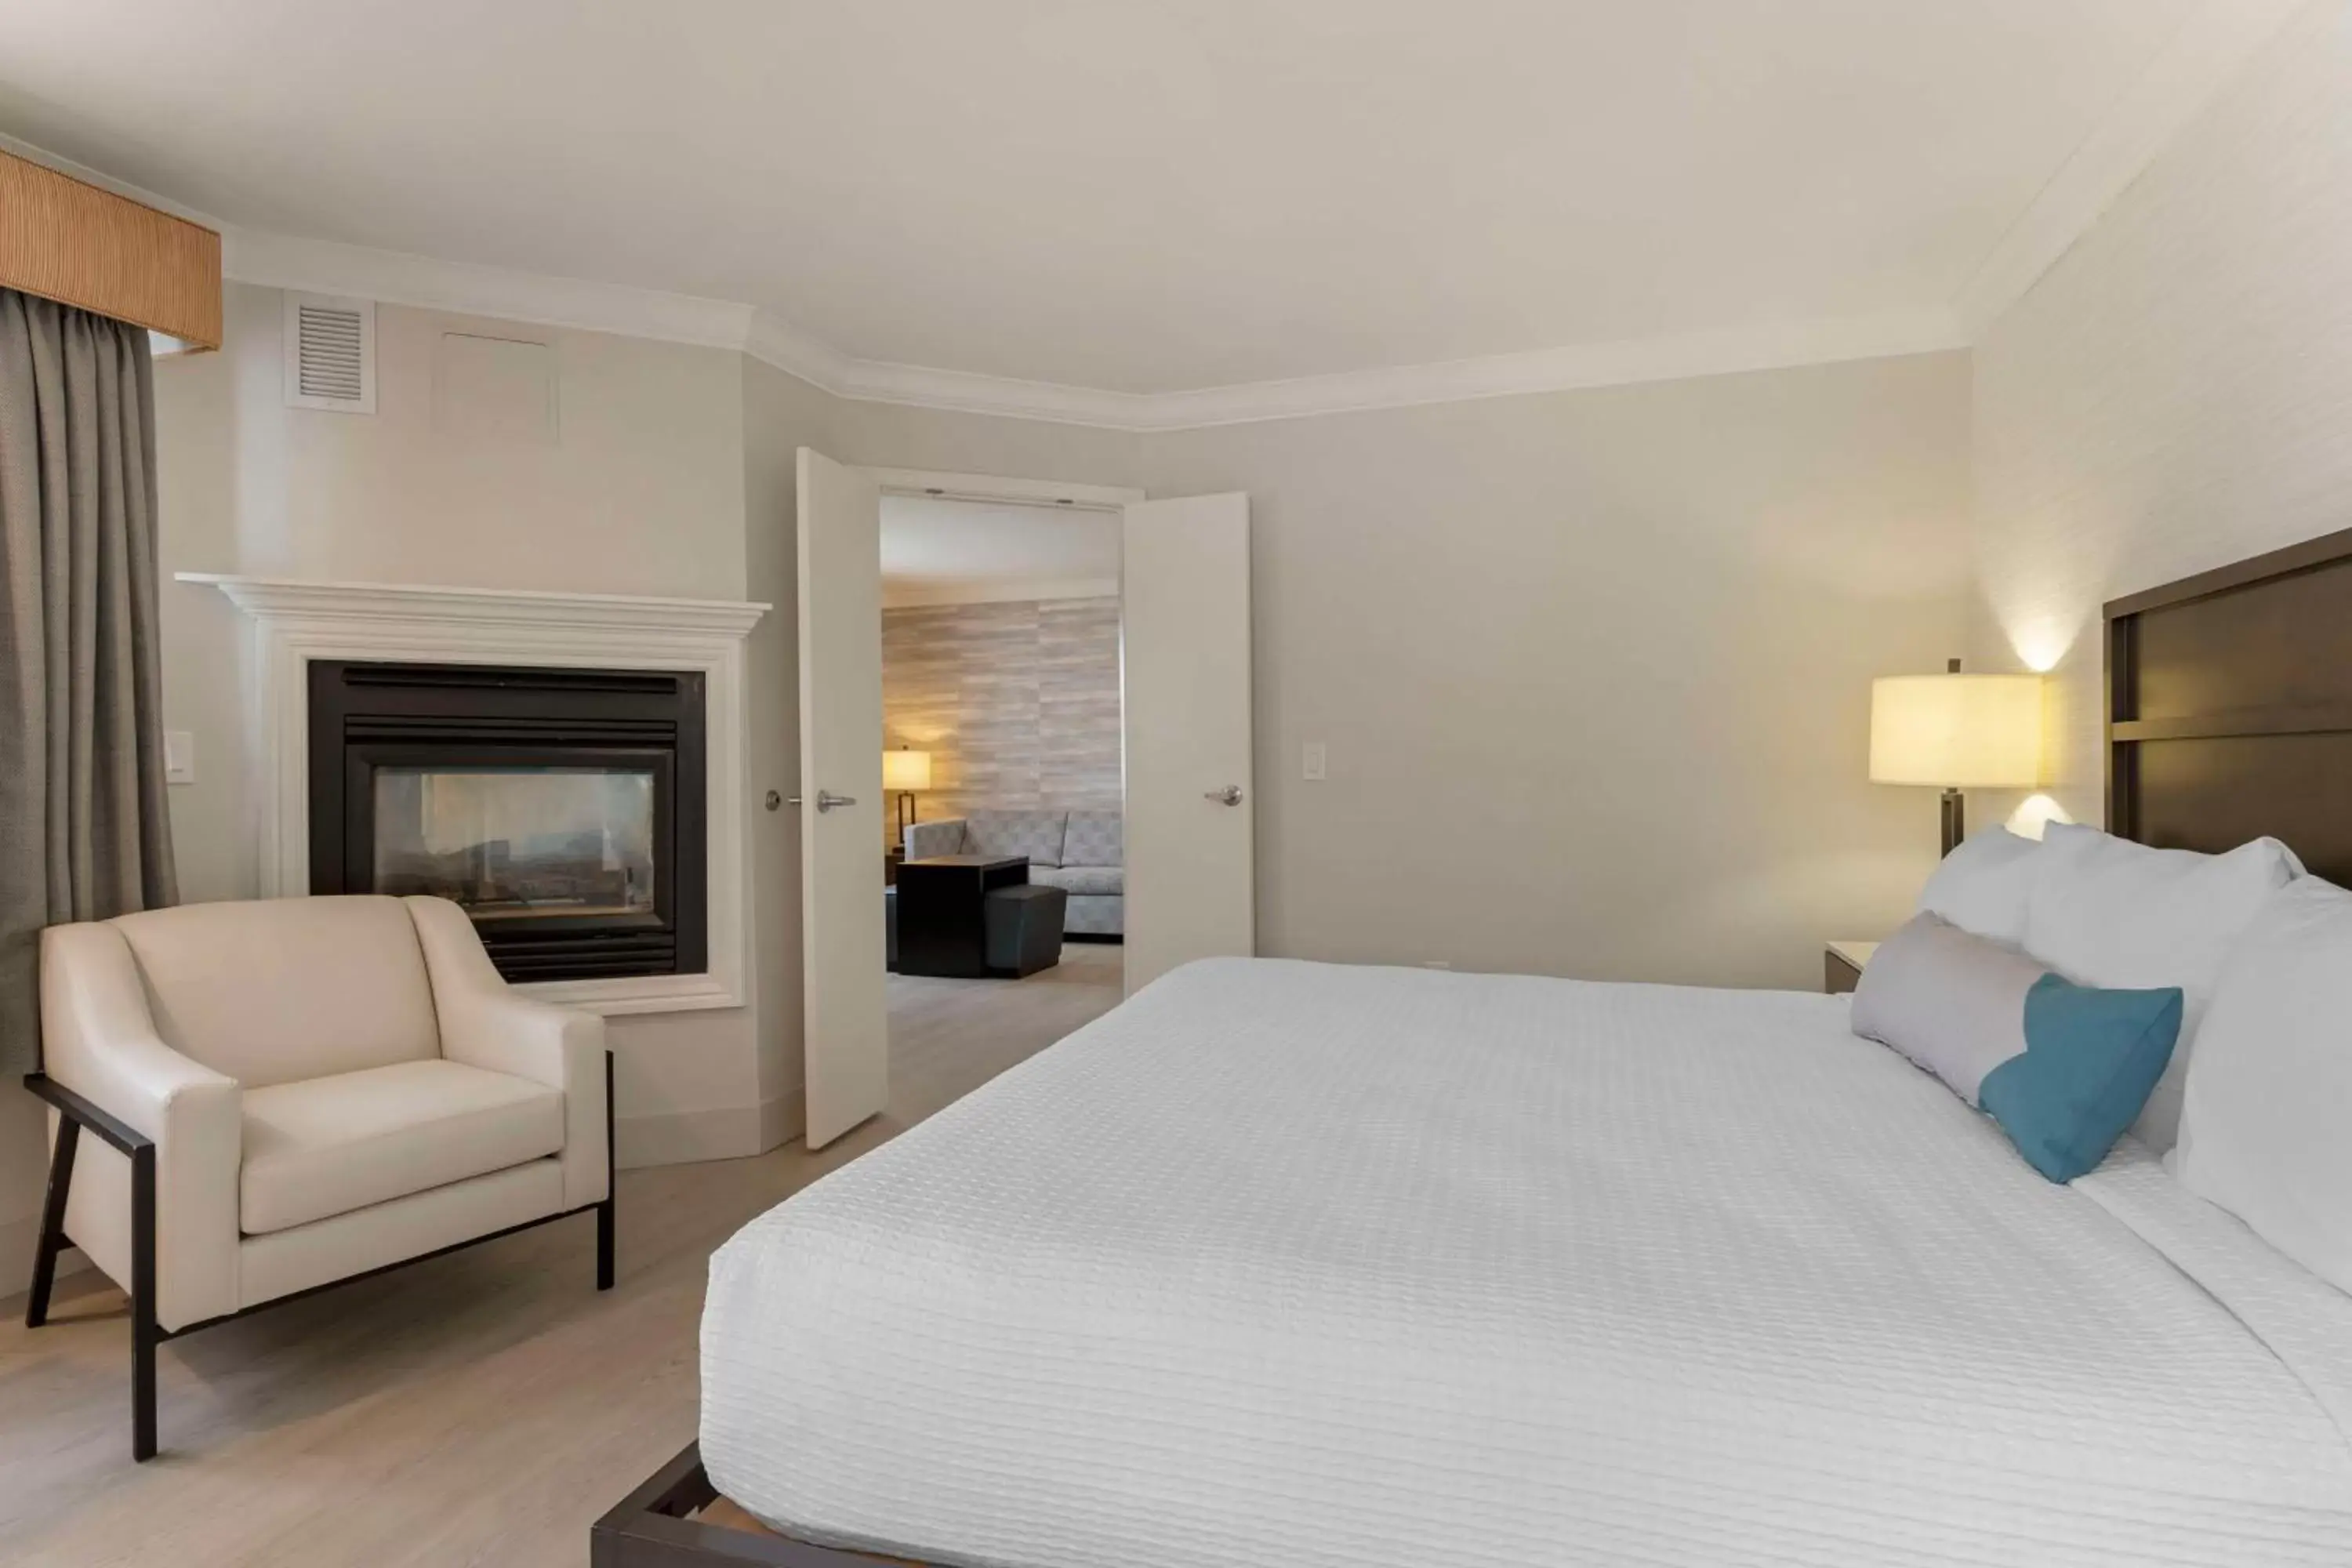 Bedroom, Bed in Best Western Plus All Suites Inn